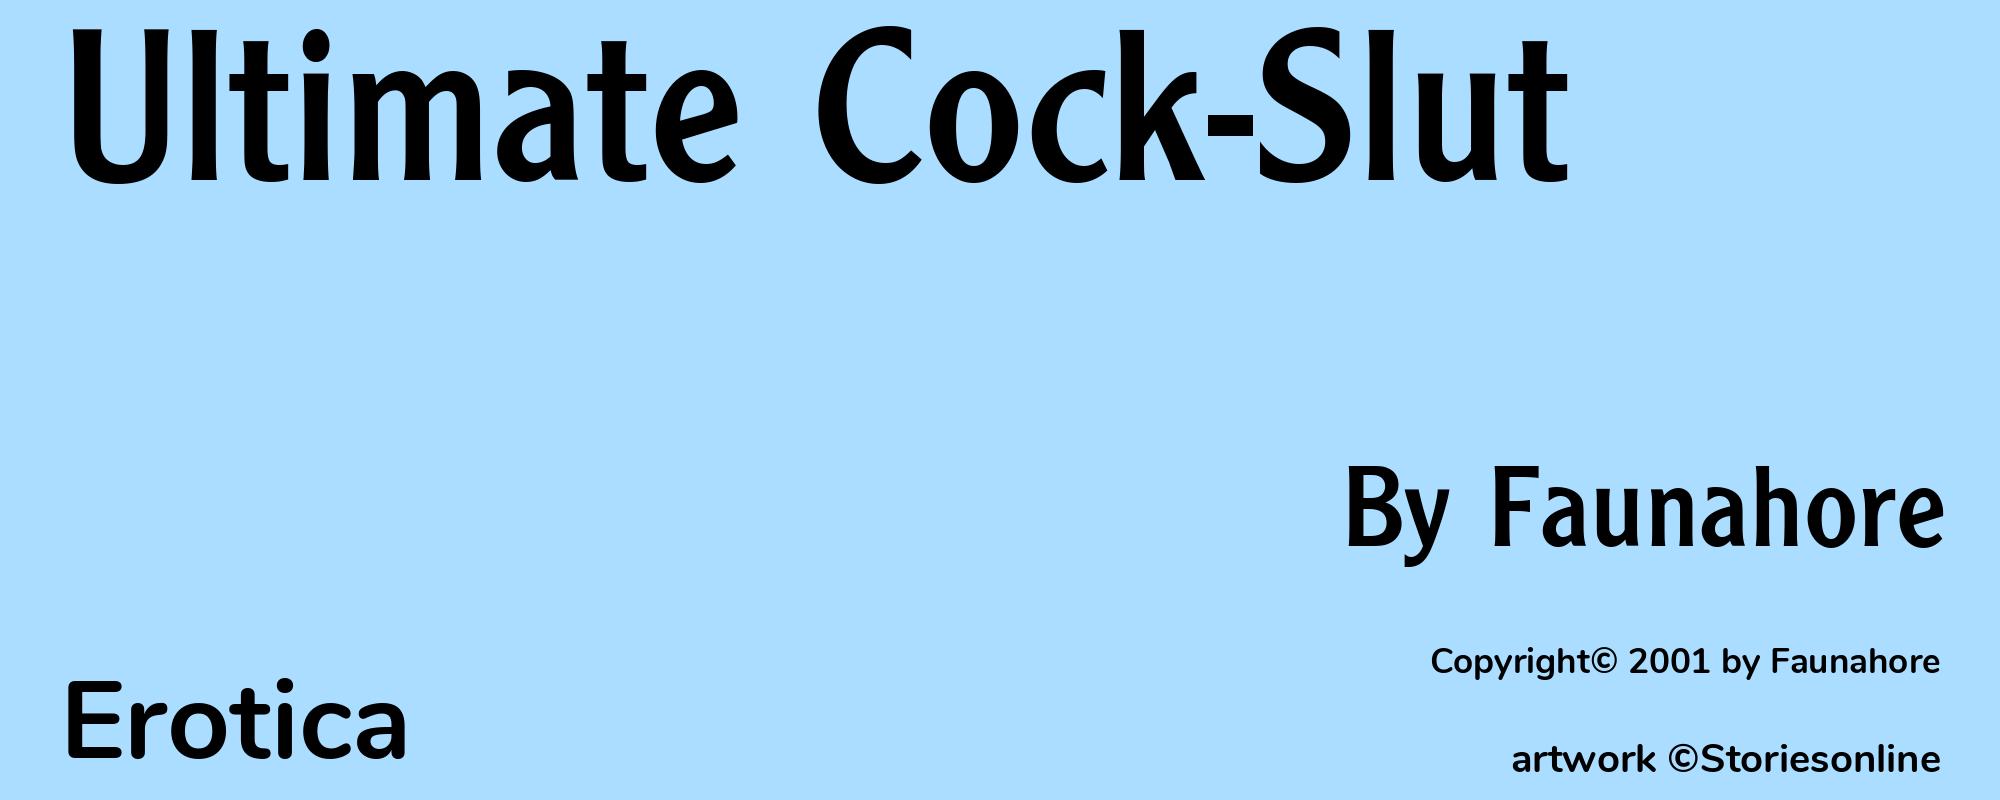 Ultimate Cock-Slut - Cover